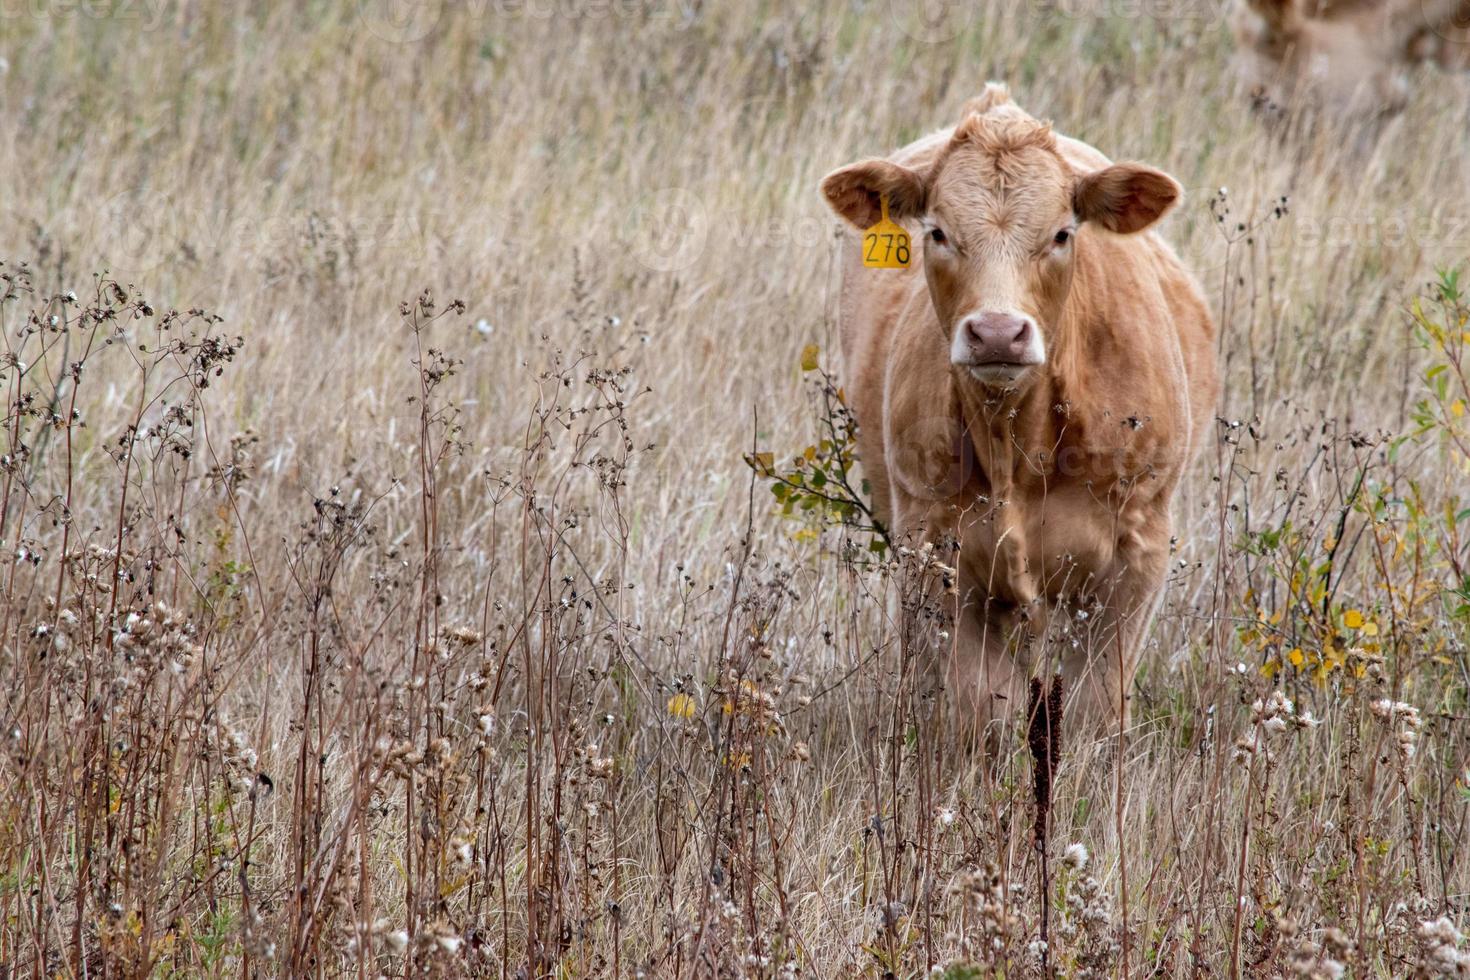 Jersey calf in southeastern Saskatchewan, Canada. photo